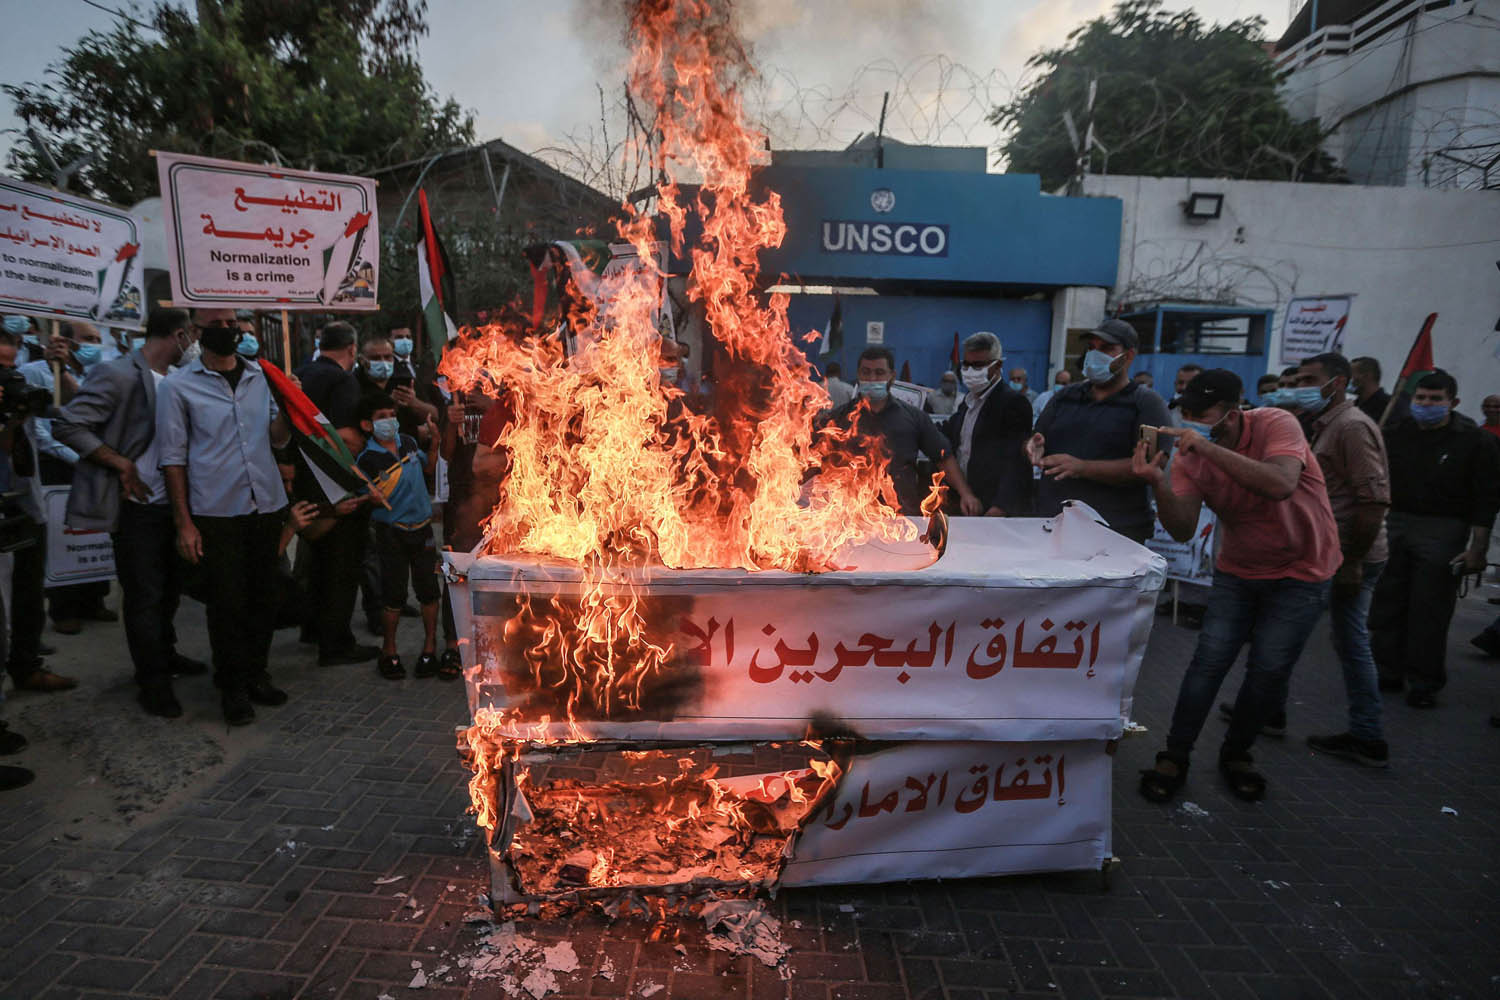 فلسطينيون يحرقون توابيت رمزية للاحتجاج على اتفاق السلام الاسرائيلي الاماراتي البحريني